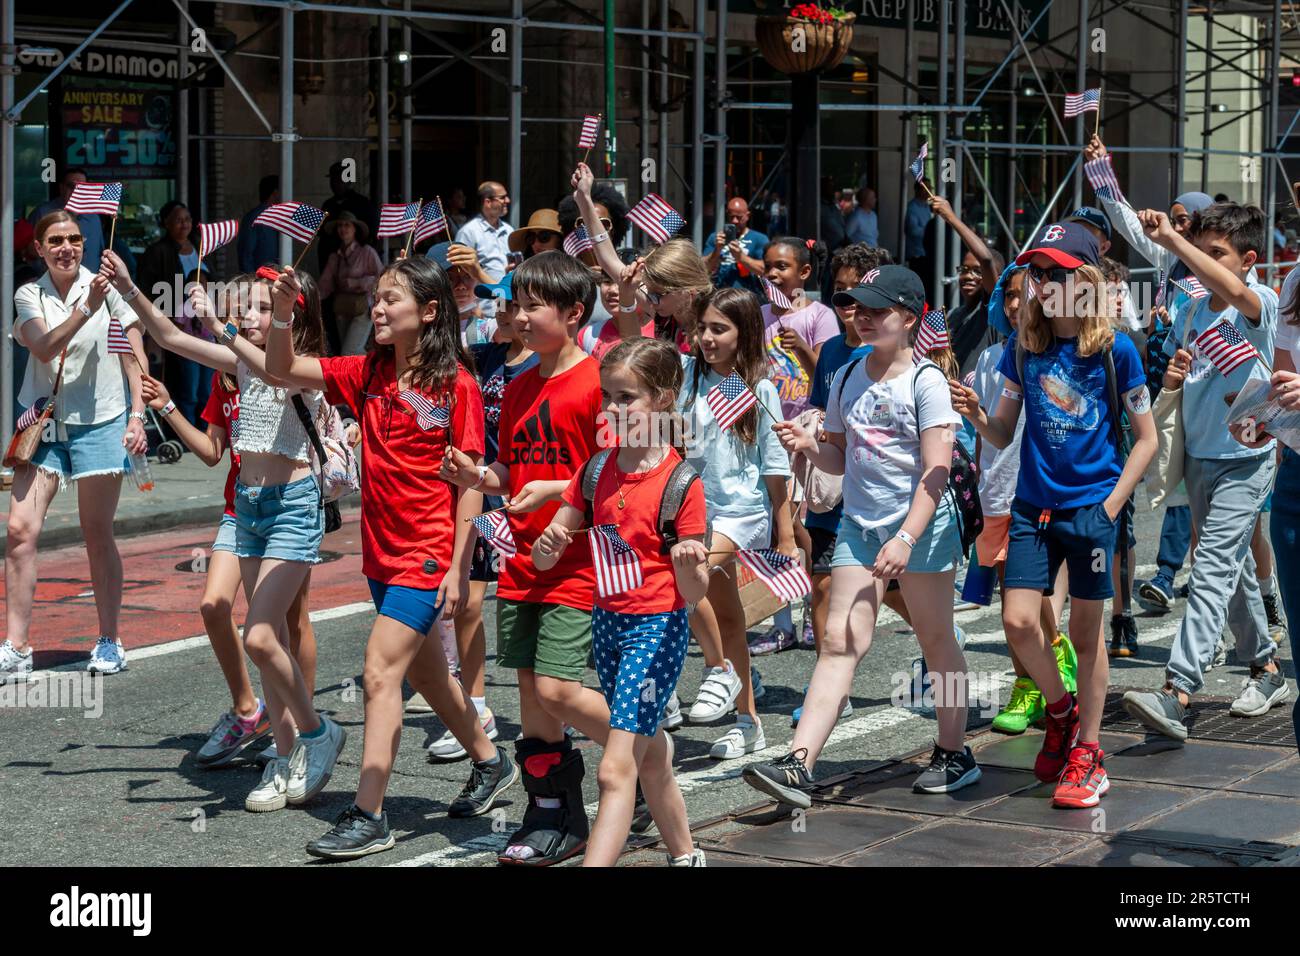 Marchers in the Annual Flag Day Parade in New York, Back from its Pandemic Hiatus, am Freitag, den 2. Juni 2023, beginnend im New York City Hall Park. Der Flaggentag wurde durch die Proklamation von Präsident Woodrow Wilson am 14. Juni 1916 als Feiertag zu Ehren der amerikanischen Flagge geschaffen, aber erst 1949 wurde er zum Tag der Nationalflagge. Der Feiertag ehrt die Flaggenresolution von 1777, in der die Sterne und Streifen offiziell als Flagge der Vereinigten Staaten übernommen wurden. (© Richard B. Levine) Stockfoto